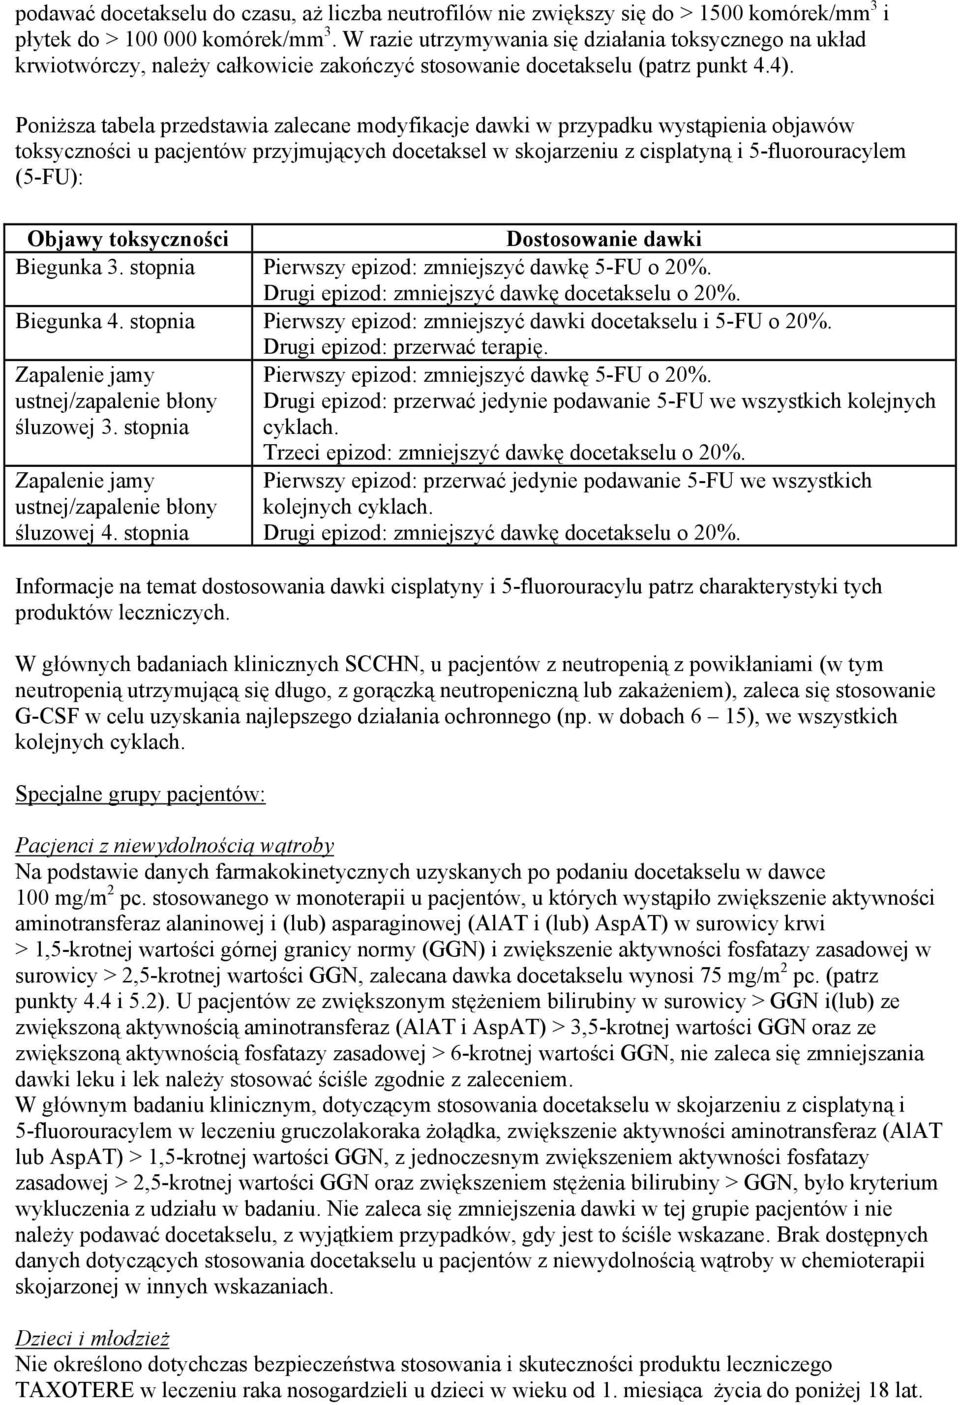 Poniższa tabela przedstawia zalecane modyfikacje dawki w przypadku wystąpienia objawów toksyczności u pacjentów przyjmujących docetaksel w skojarzeniu z cisplatyną i 5-fluorouracylem (5-FU): Objawy